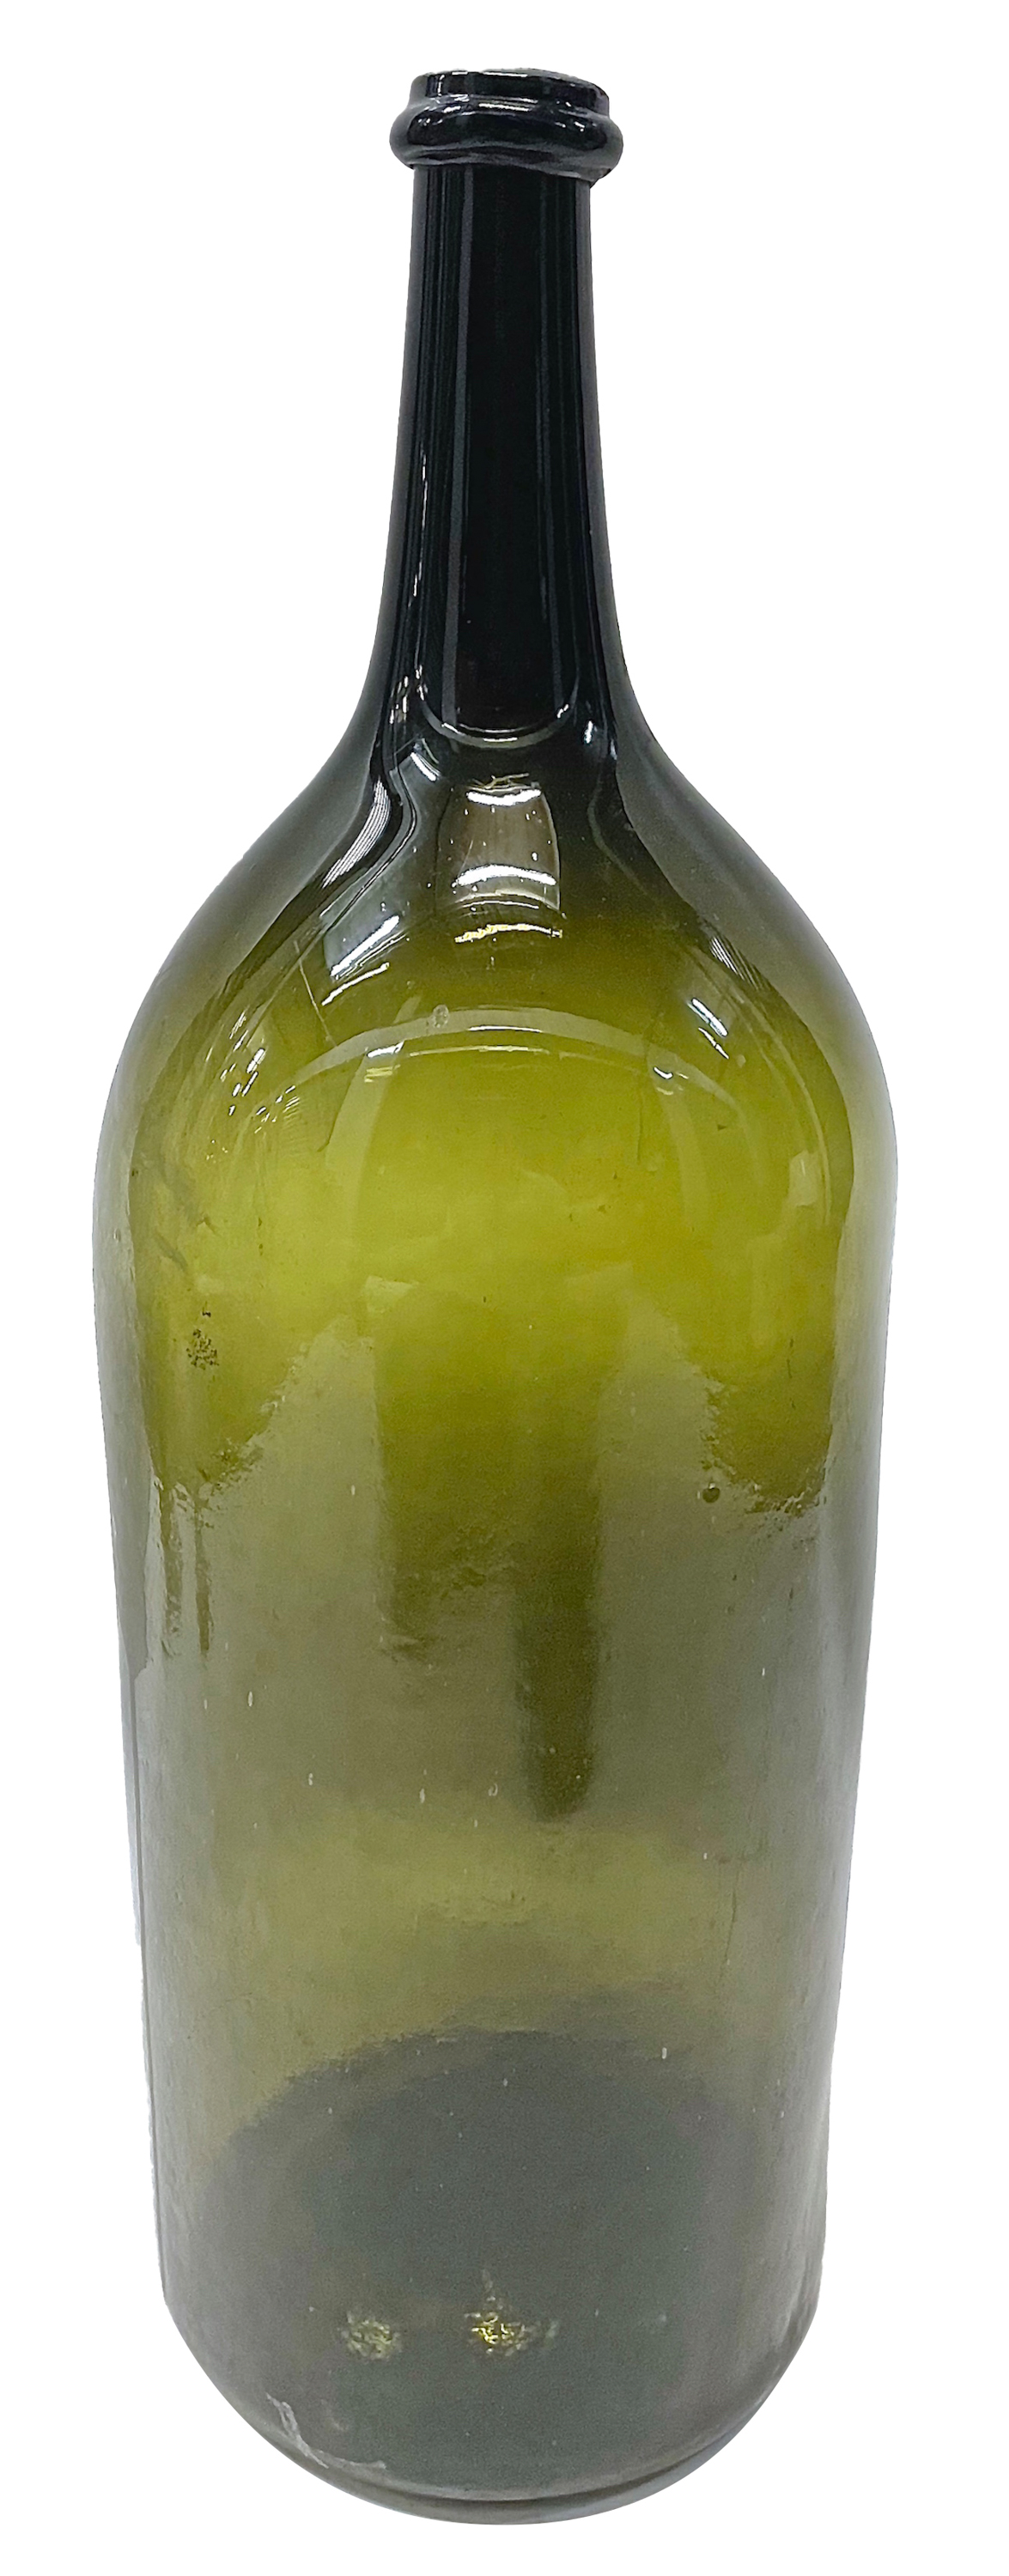 Antique Tall Green Glass Bottle